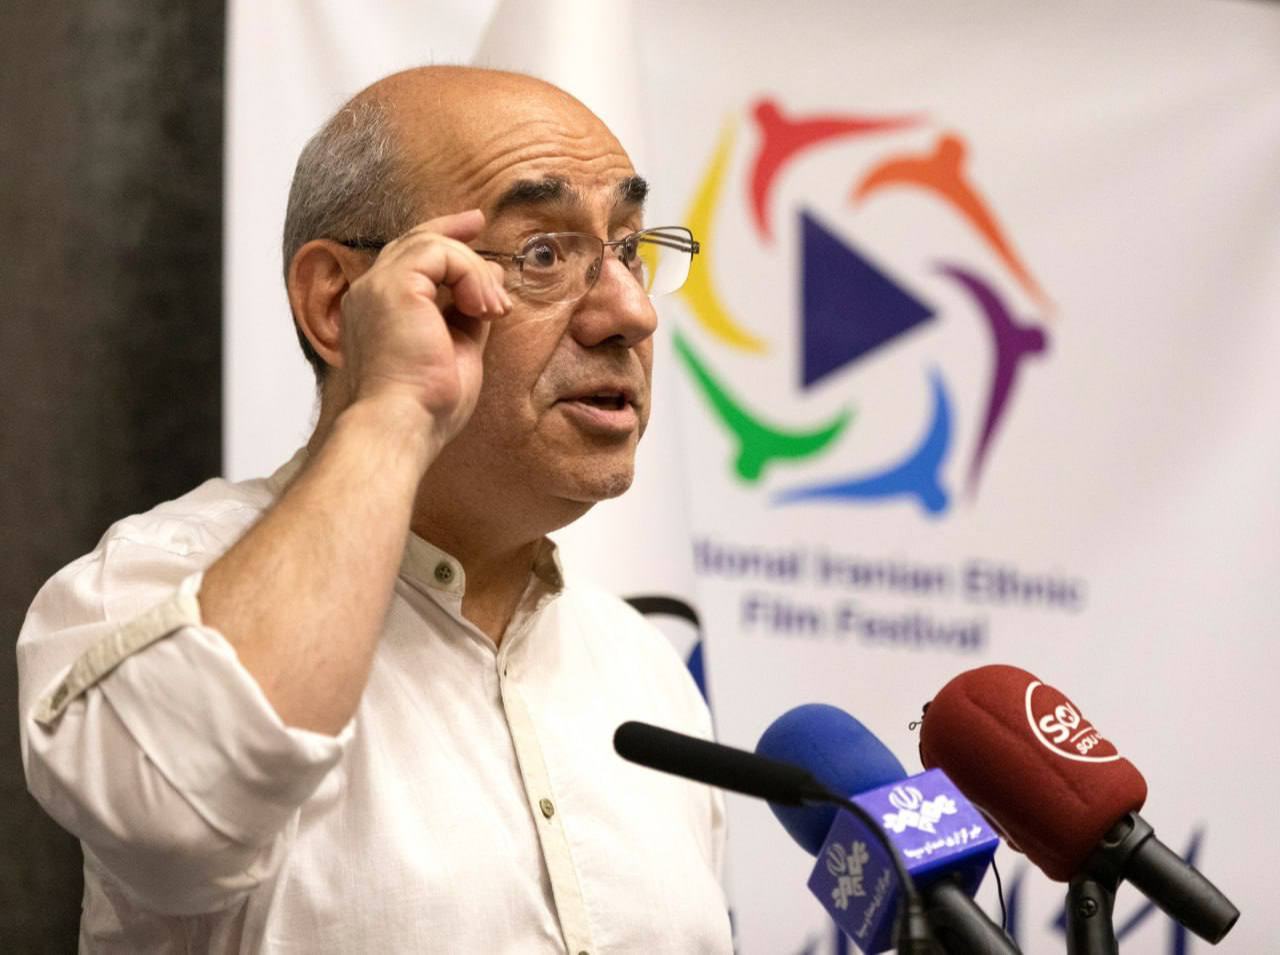 زمان و مکان برگزاری جشنواره ملی فیلم اقوام ایرانی اعلام شد